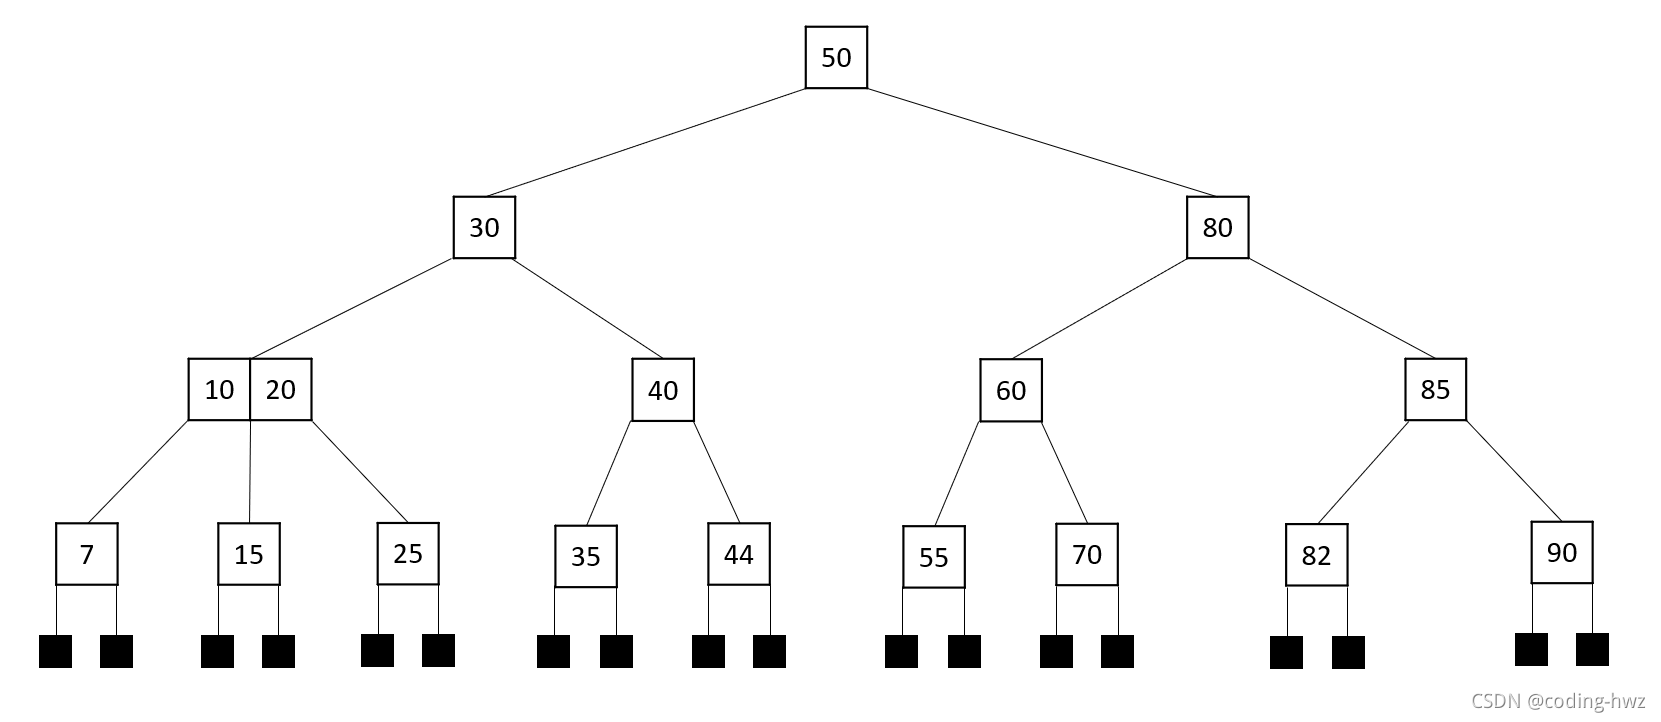 《数据结构、算法与应用 —— C++语言描述》学习笔记 — 平衡搜索树 — B树